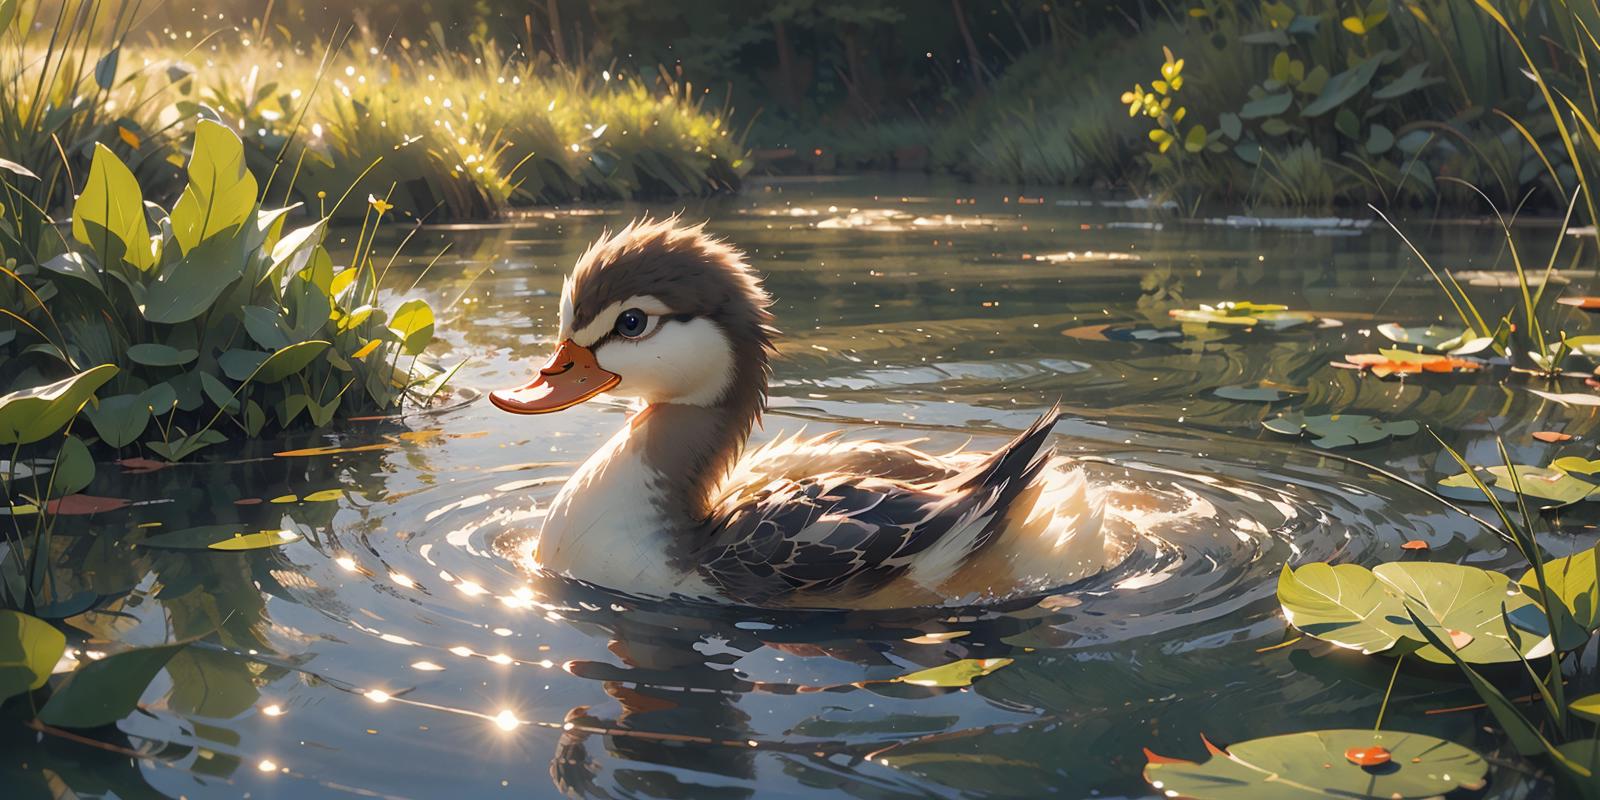 野鸭子/Cute duck Lora image by chosen